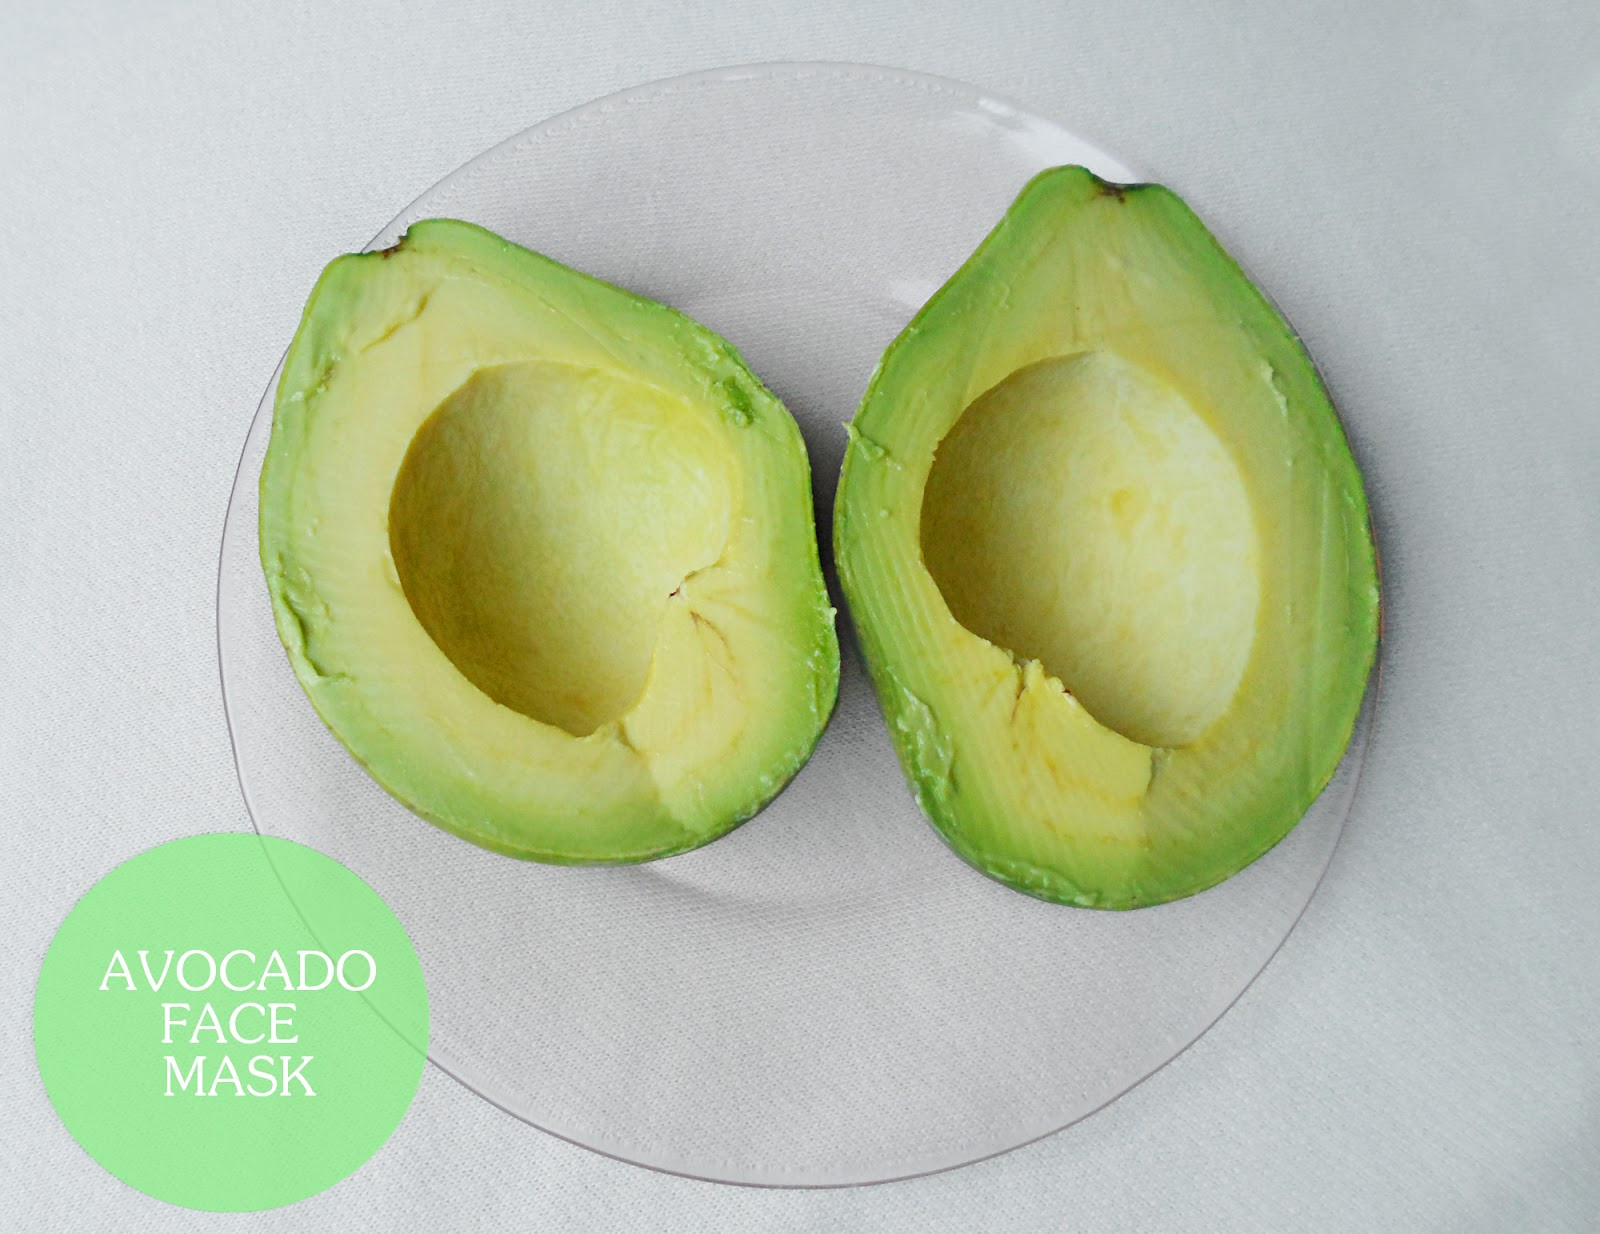 DIY Avocado Face Mask
 DIY Homemade Avocado Face Mask